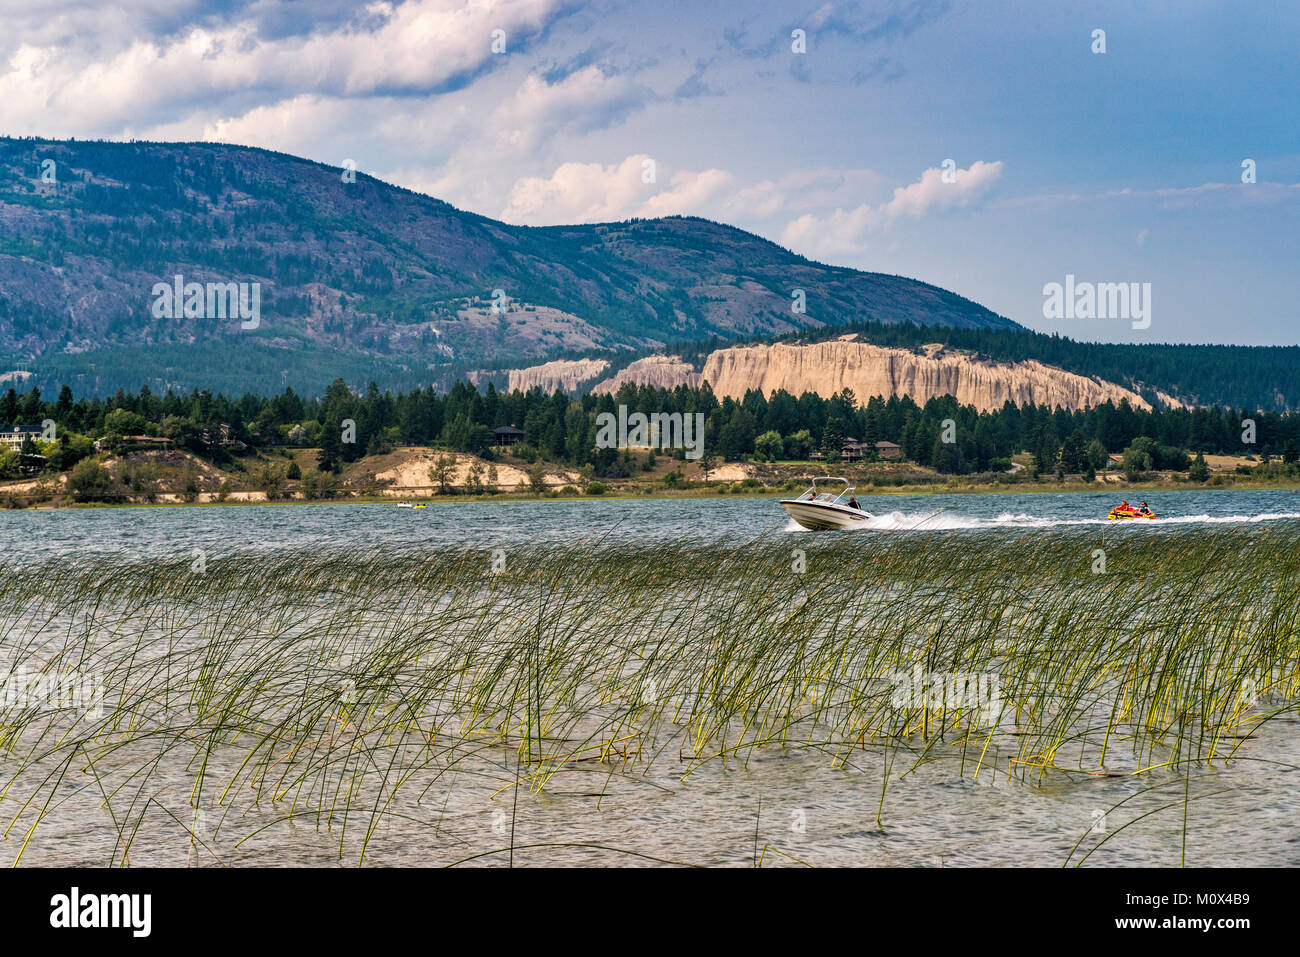 Lancha tirando de la mujer y la niña en el bote de goma, el lago Windermere, Columbia Valley, Purcell Mountains, cerca de Invermere, British Columbia, Canadá Foto de stock